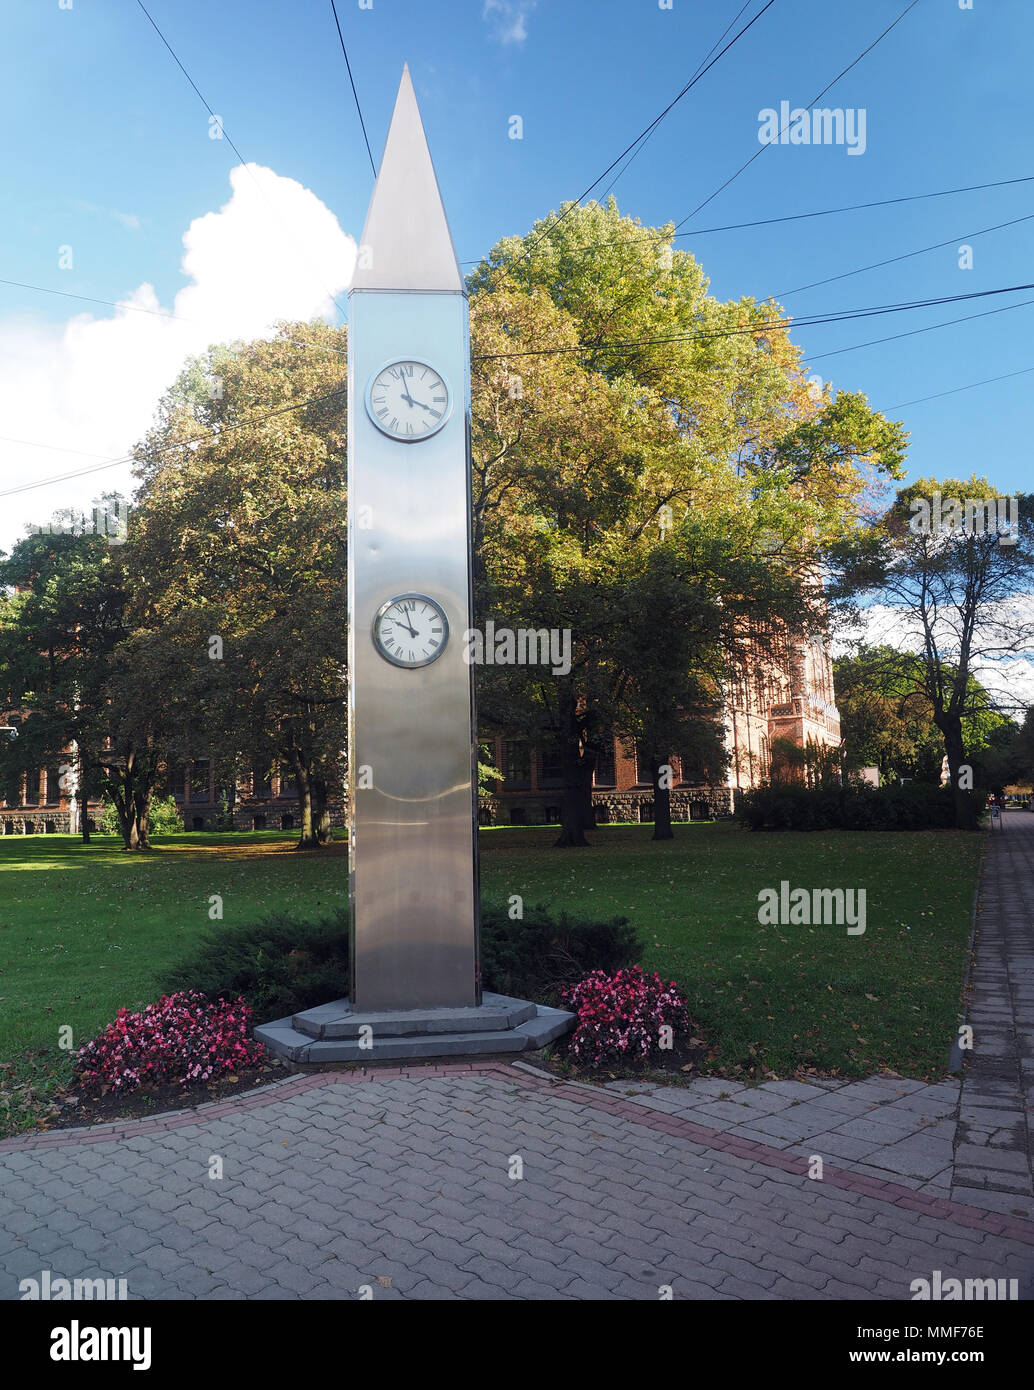 Kobe Friendship Clock in Riga, Latvia, Europe Stock Photo